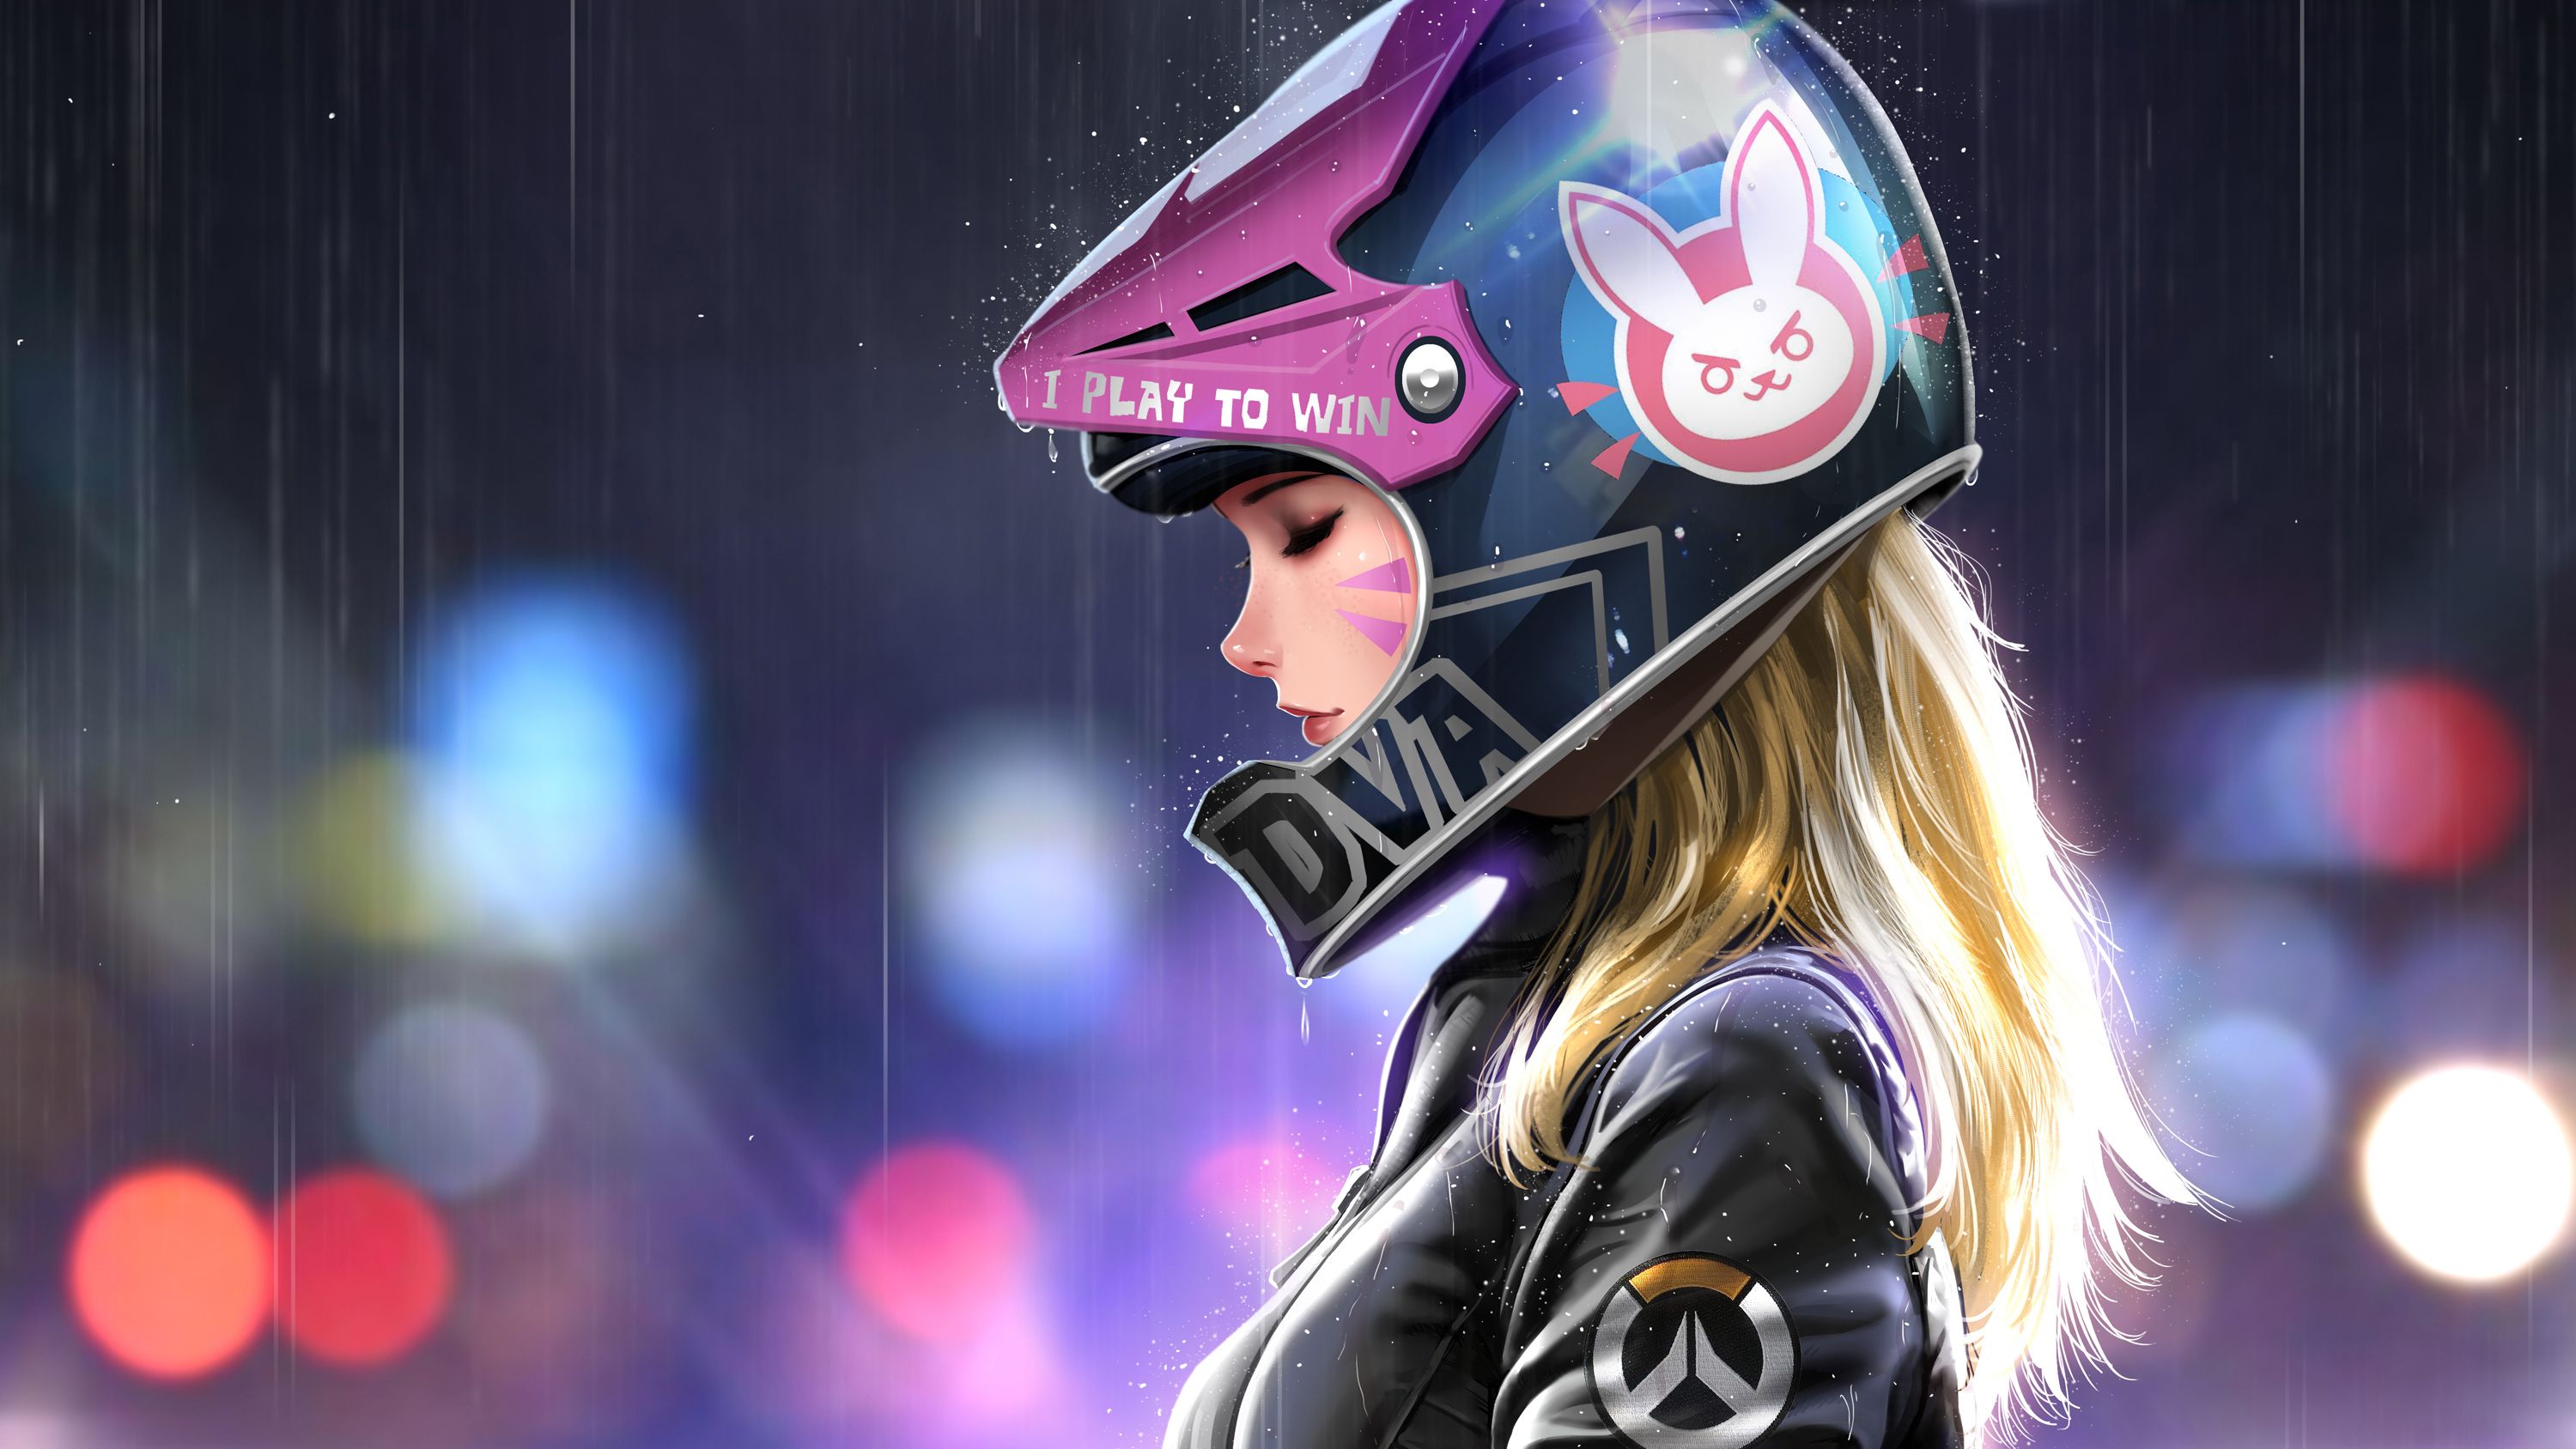 Dva Biker Girl, HD Games, 4k Wallpaper, Image, Background